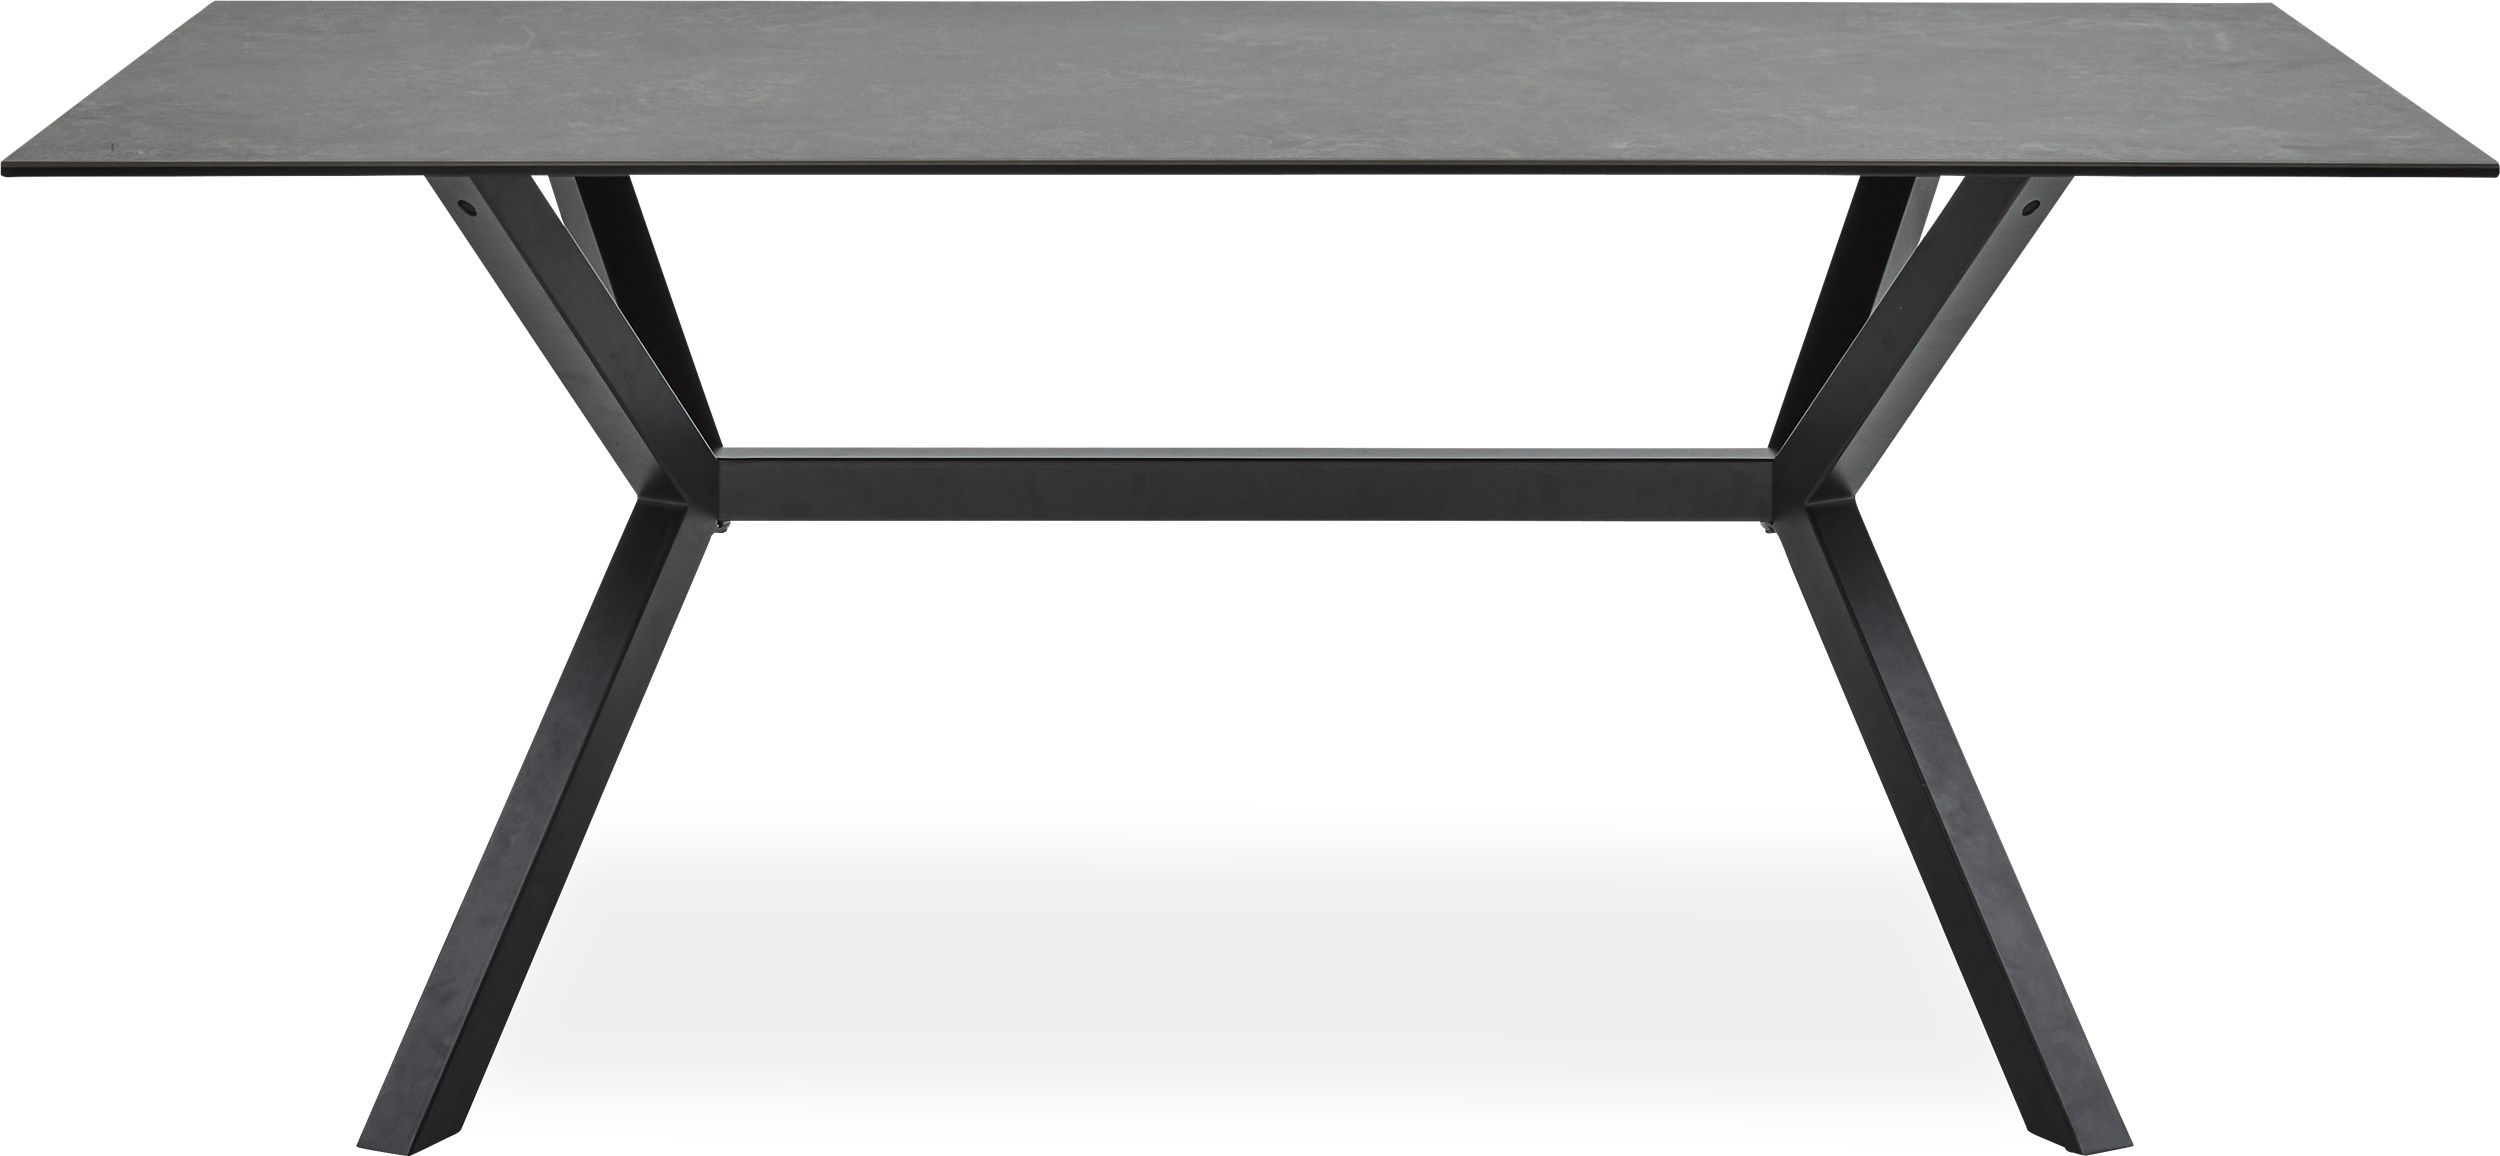 Zari Matbord 180 x 90 x 74 cm - Bordsskiva i grå keramik och stomme i svart pulverlackerad metall